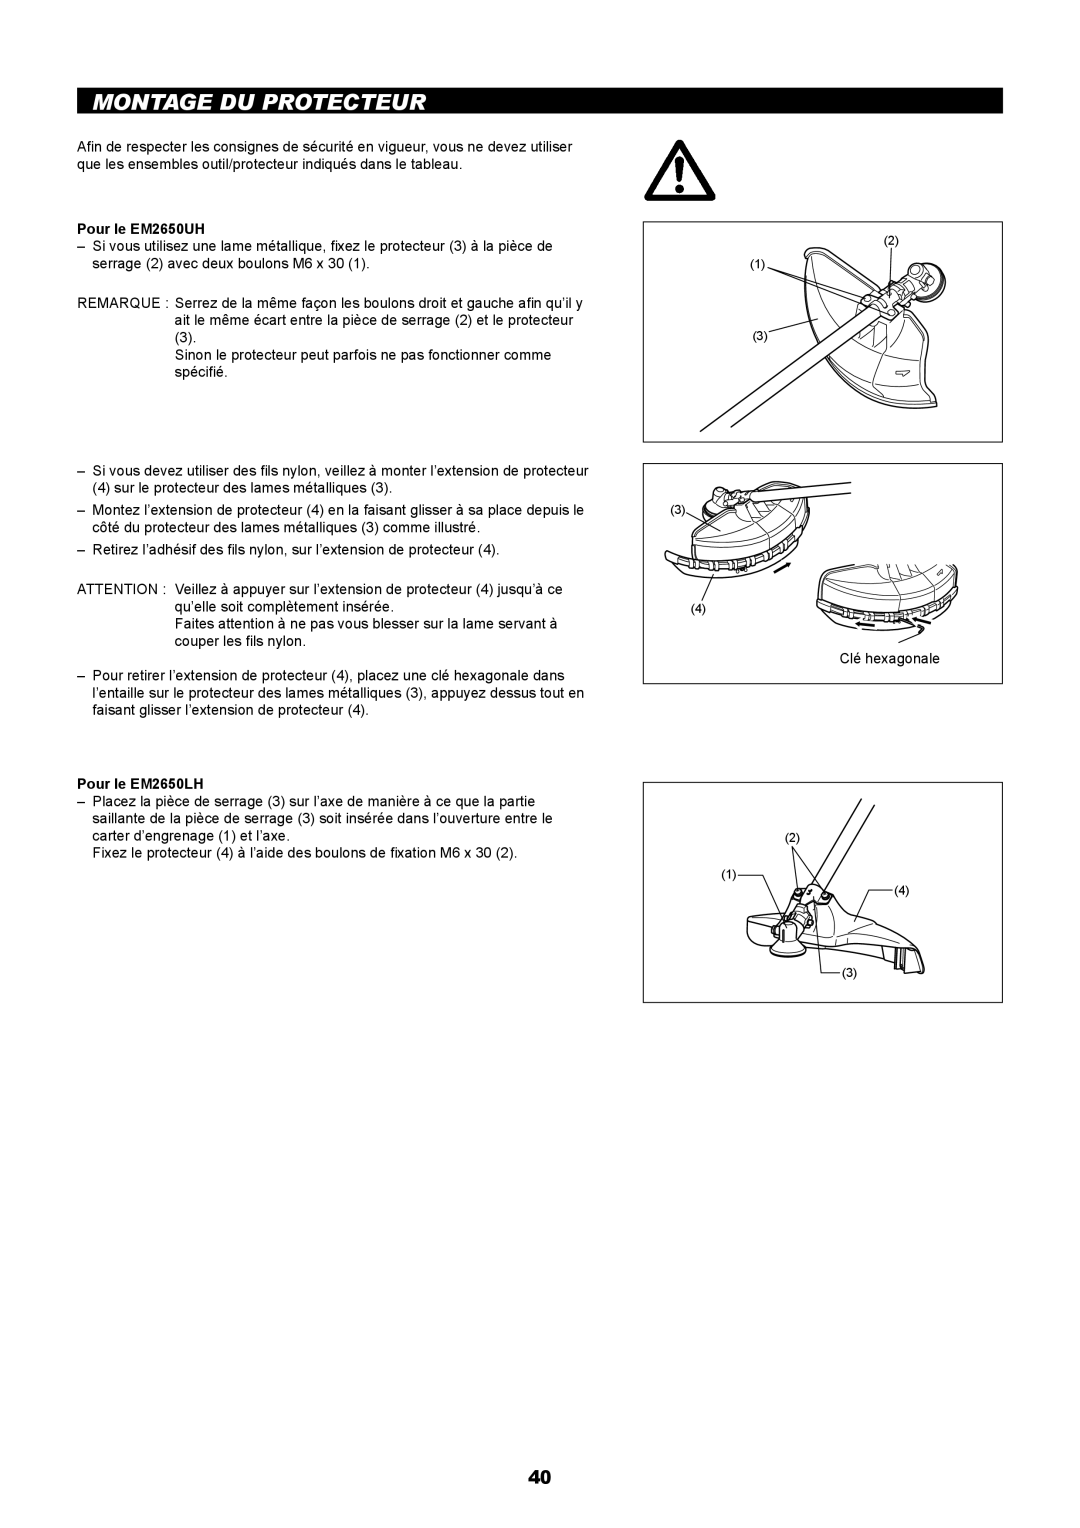 Makita manual Montage Du Protecteur, Pour le EM2650UH, Pour le EM2650LH 